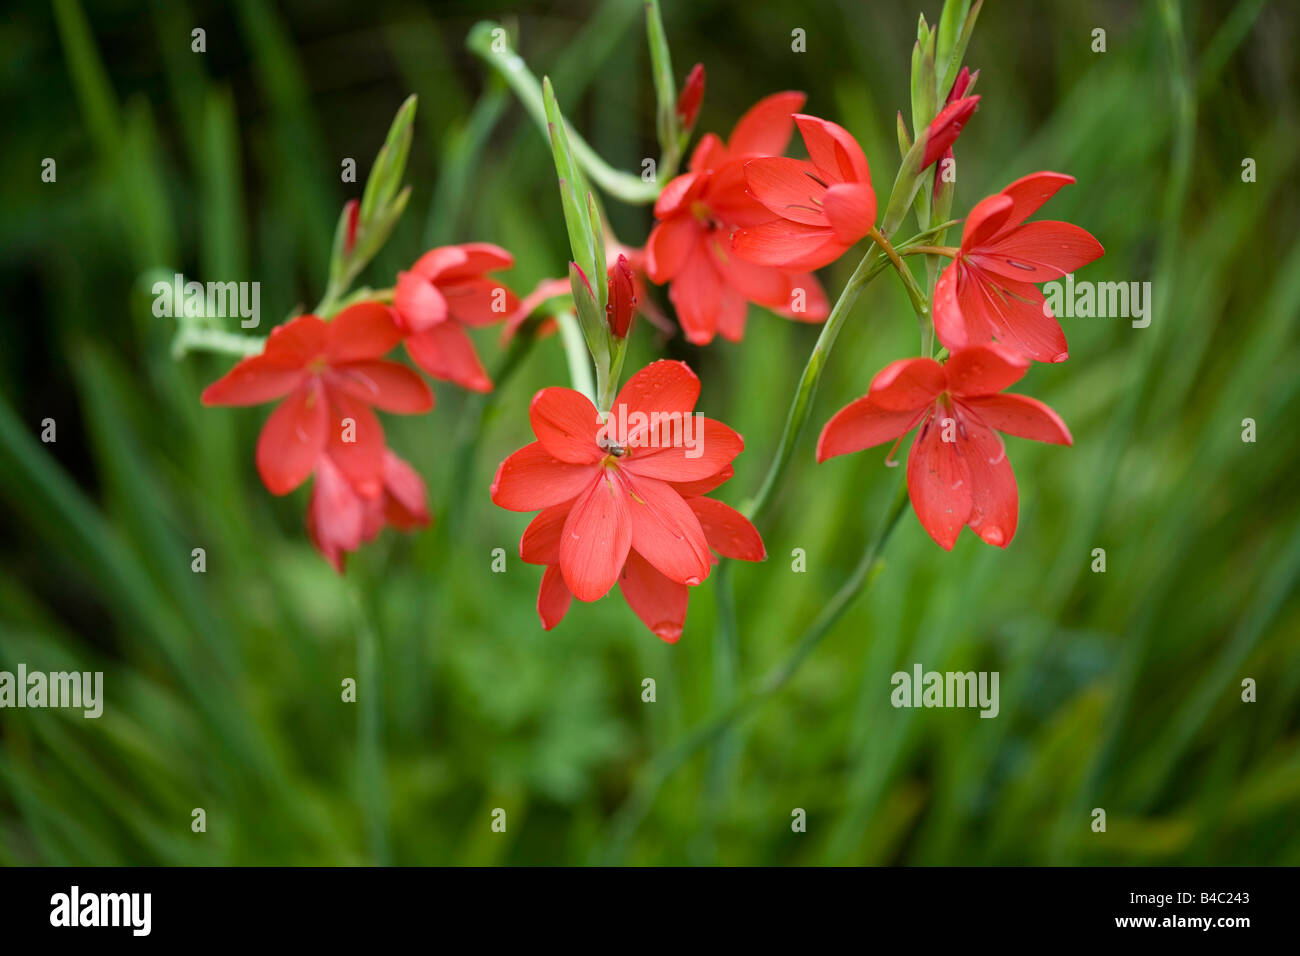 Red Schizostylis, Kaffir lily Stock Photo